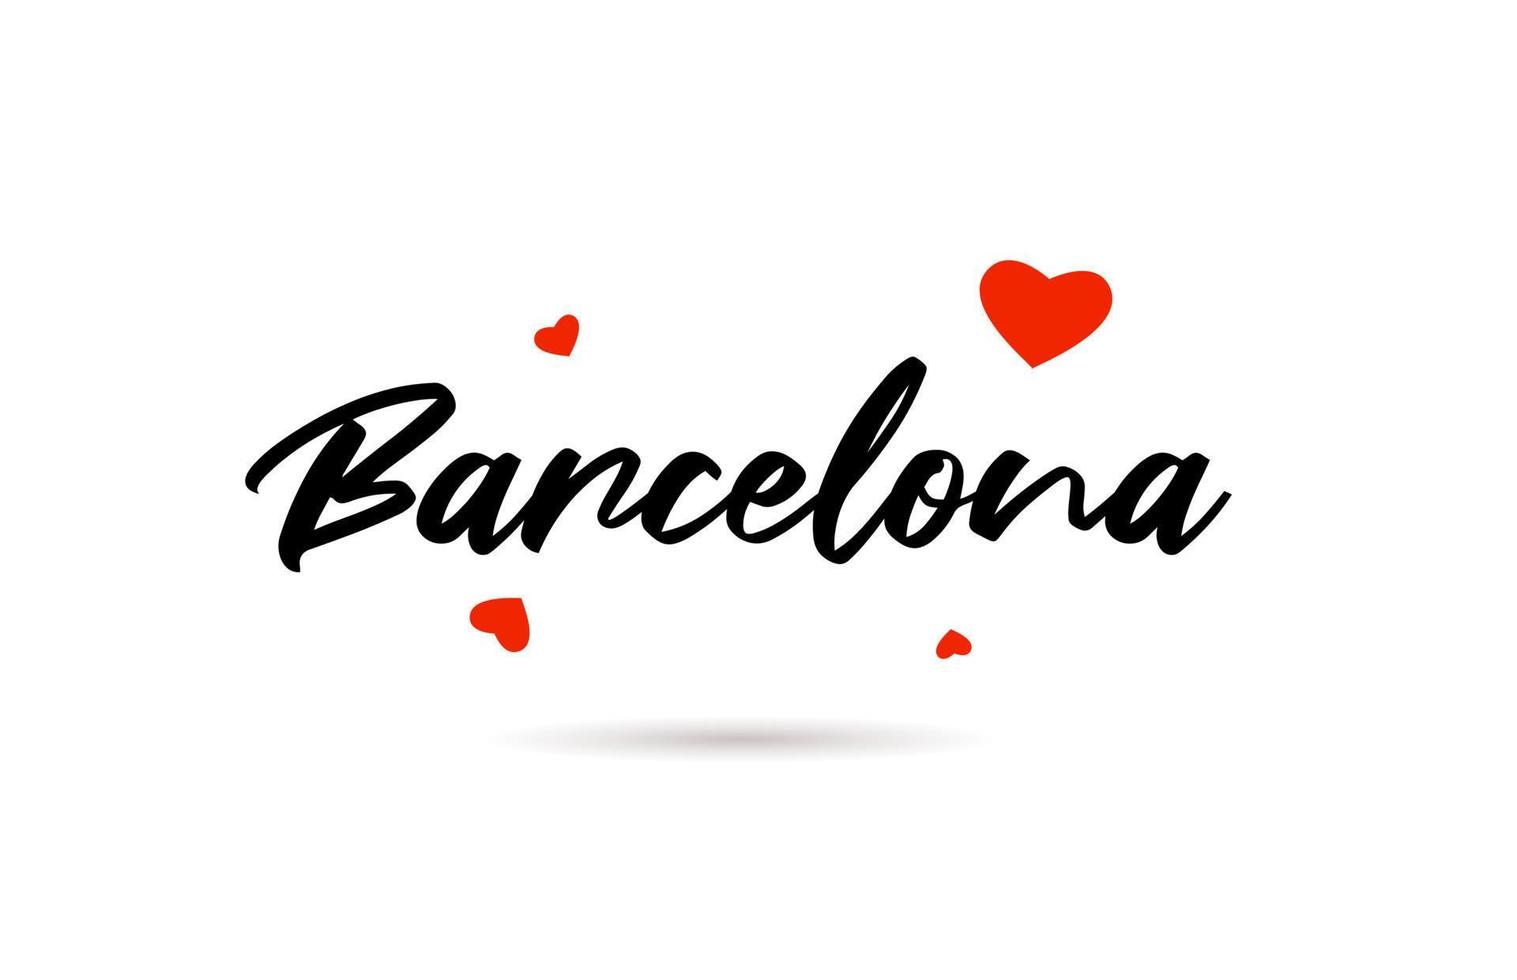 Barcelona escrito ciudad tipografía texto con amor corazón vector